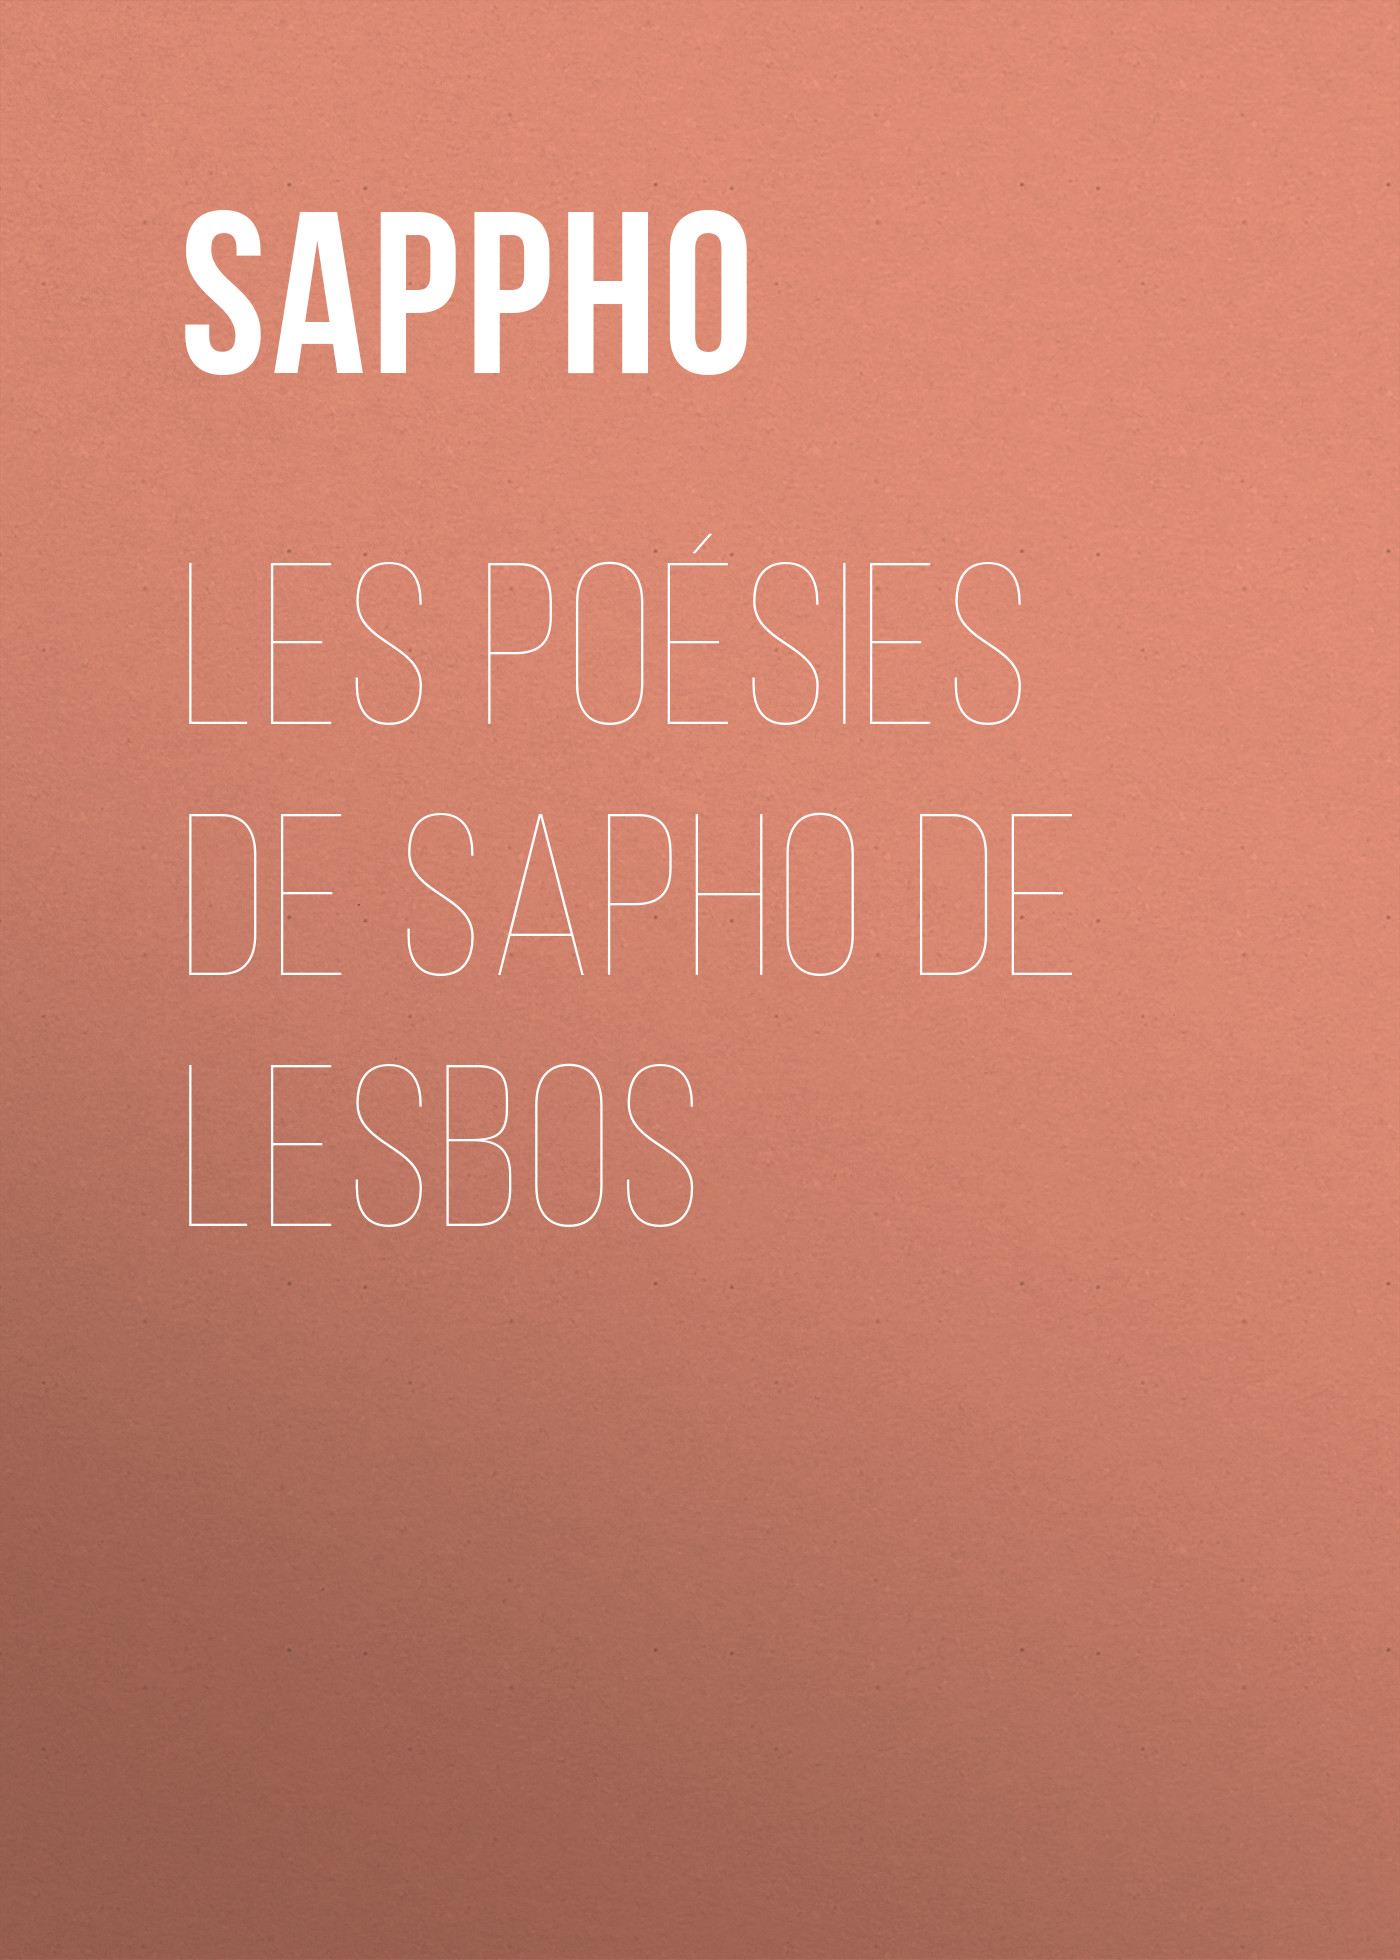 Книга Les poésies de Sapho de Lesbos из серии , созданная  Sappho, может относится к жанру Зарубежная классика, Зарубежная старинная литература. Стоимость электронной книги Les poésies de Sapho de Lesbos с идентификатором 25450884 составляет 0 руб.